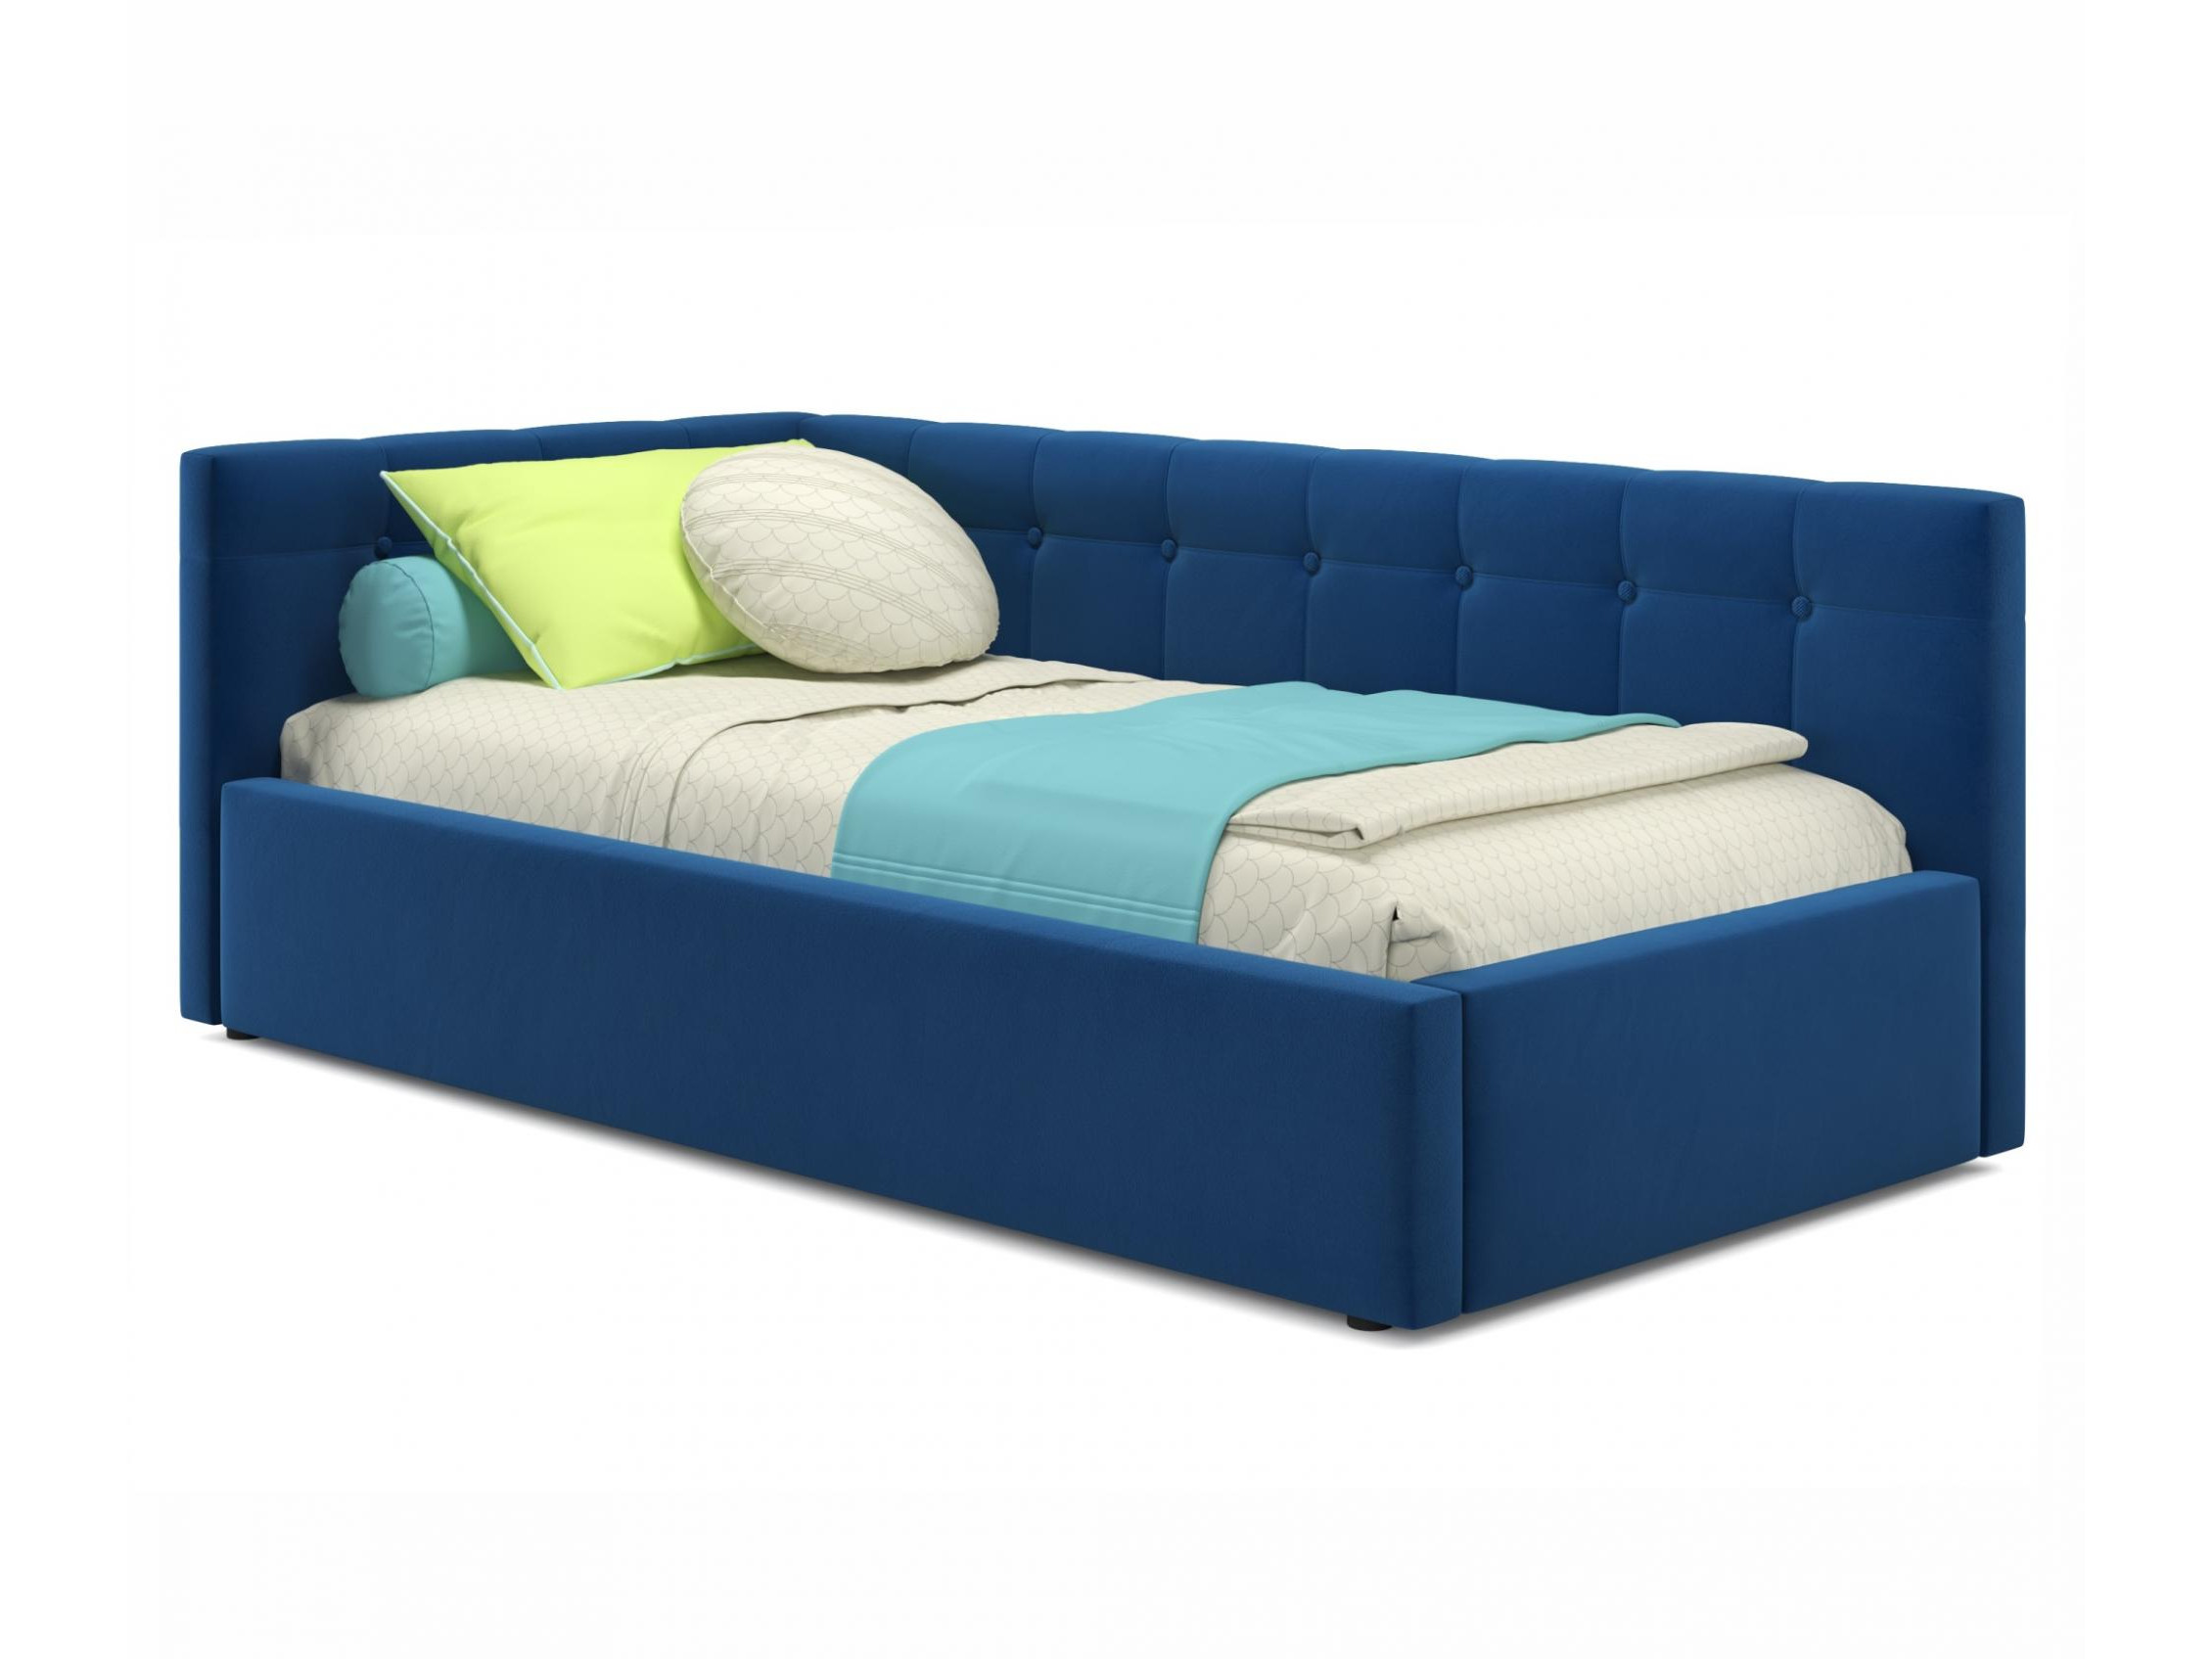 Односпальная кровать-тахта Bonna 900 синяя с подъемным механизмом синий, Синий, Велюр, ДСП односпальная кровать тахта bonna 900 венге с подъемным механизмом